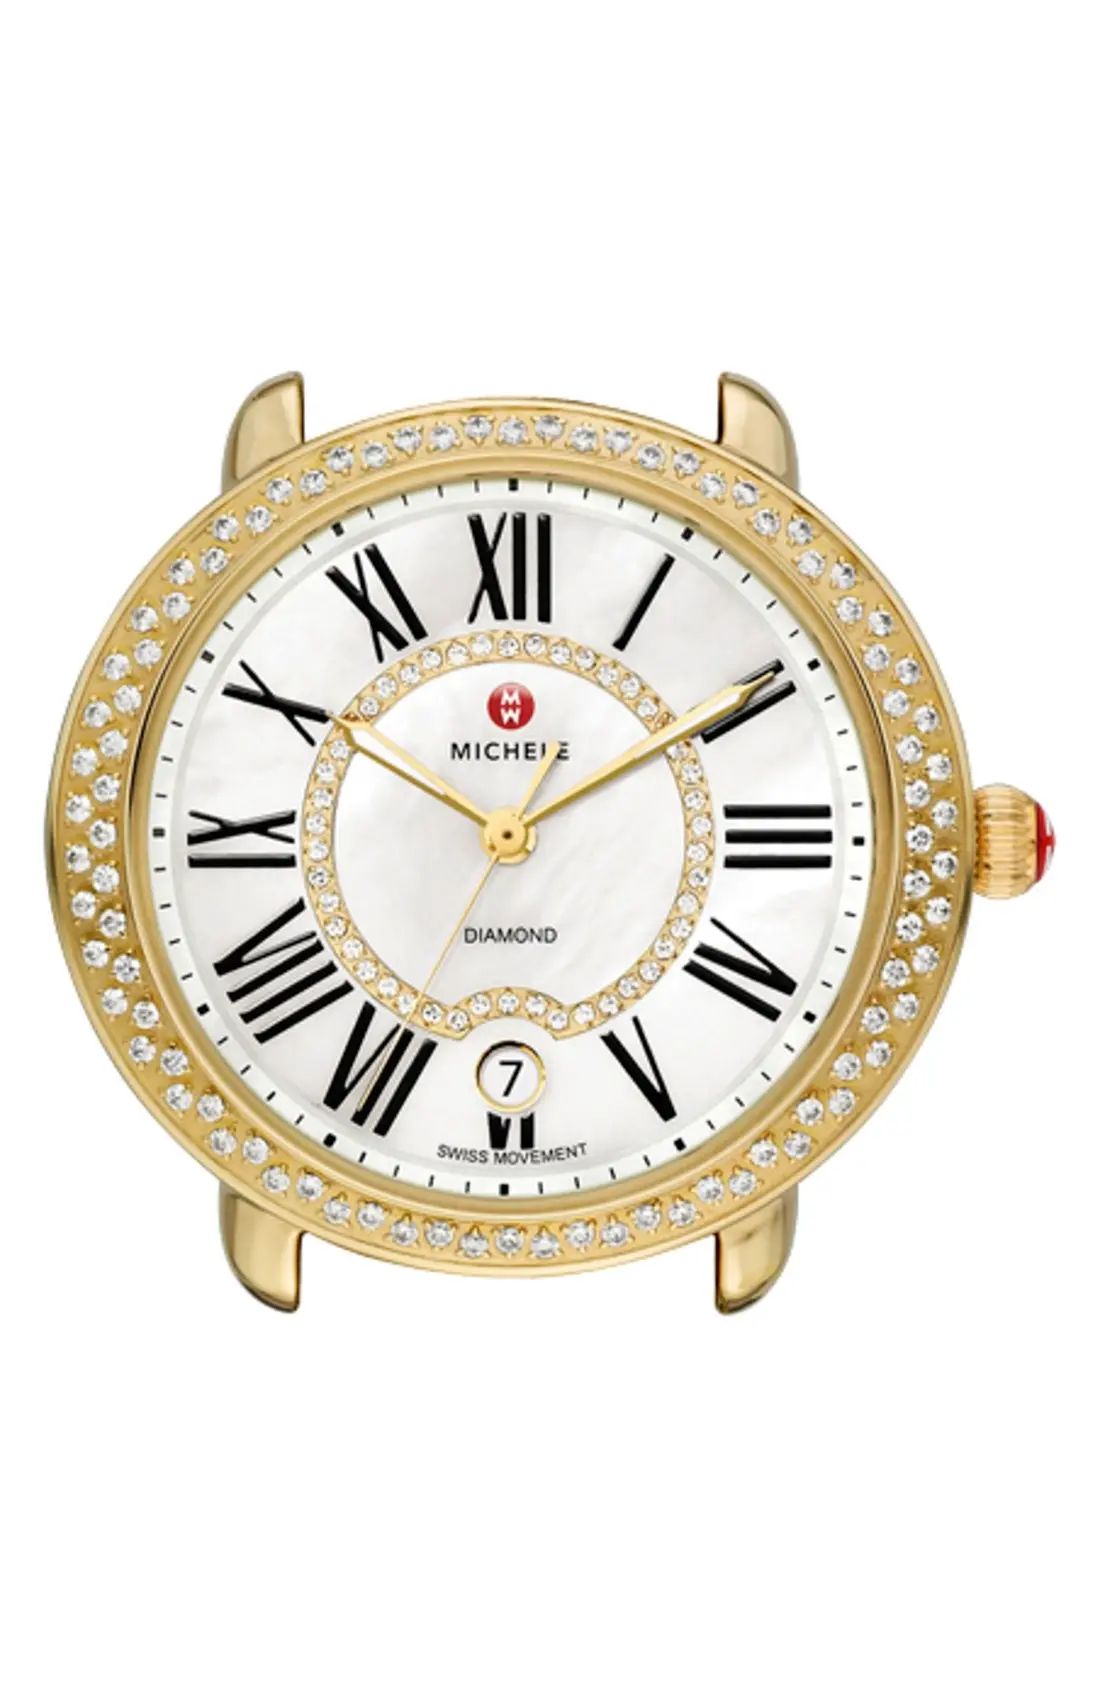 Serein 16 Diamond Gold Plated Watch Case, 34mm x 36mm | Nordstrom